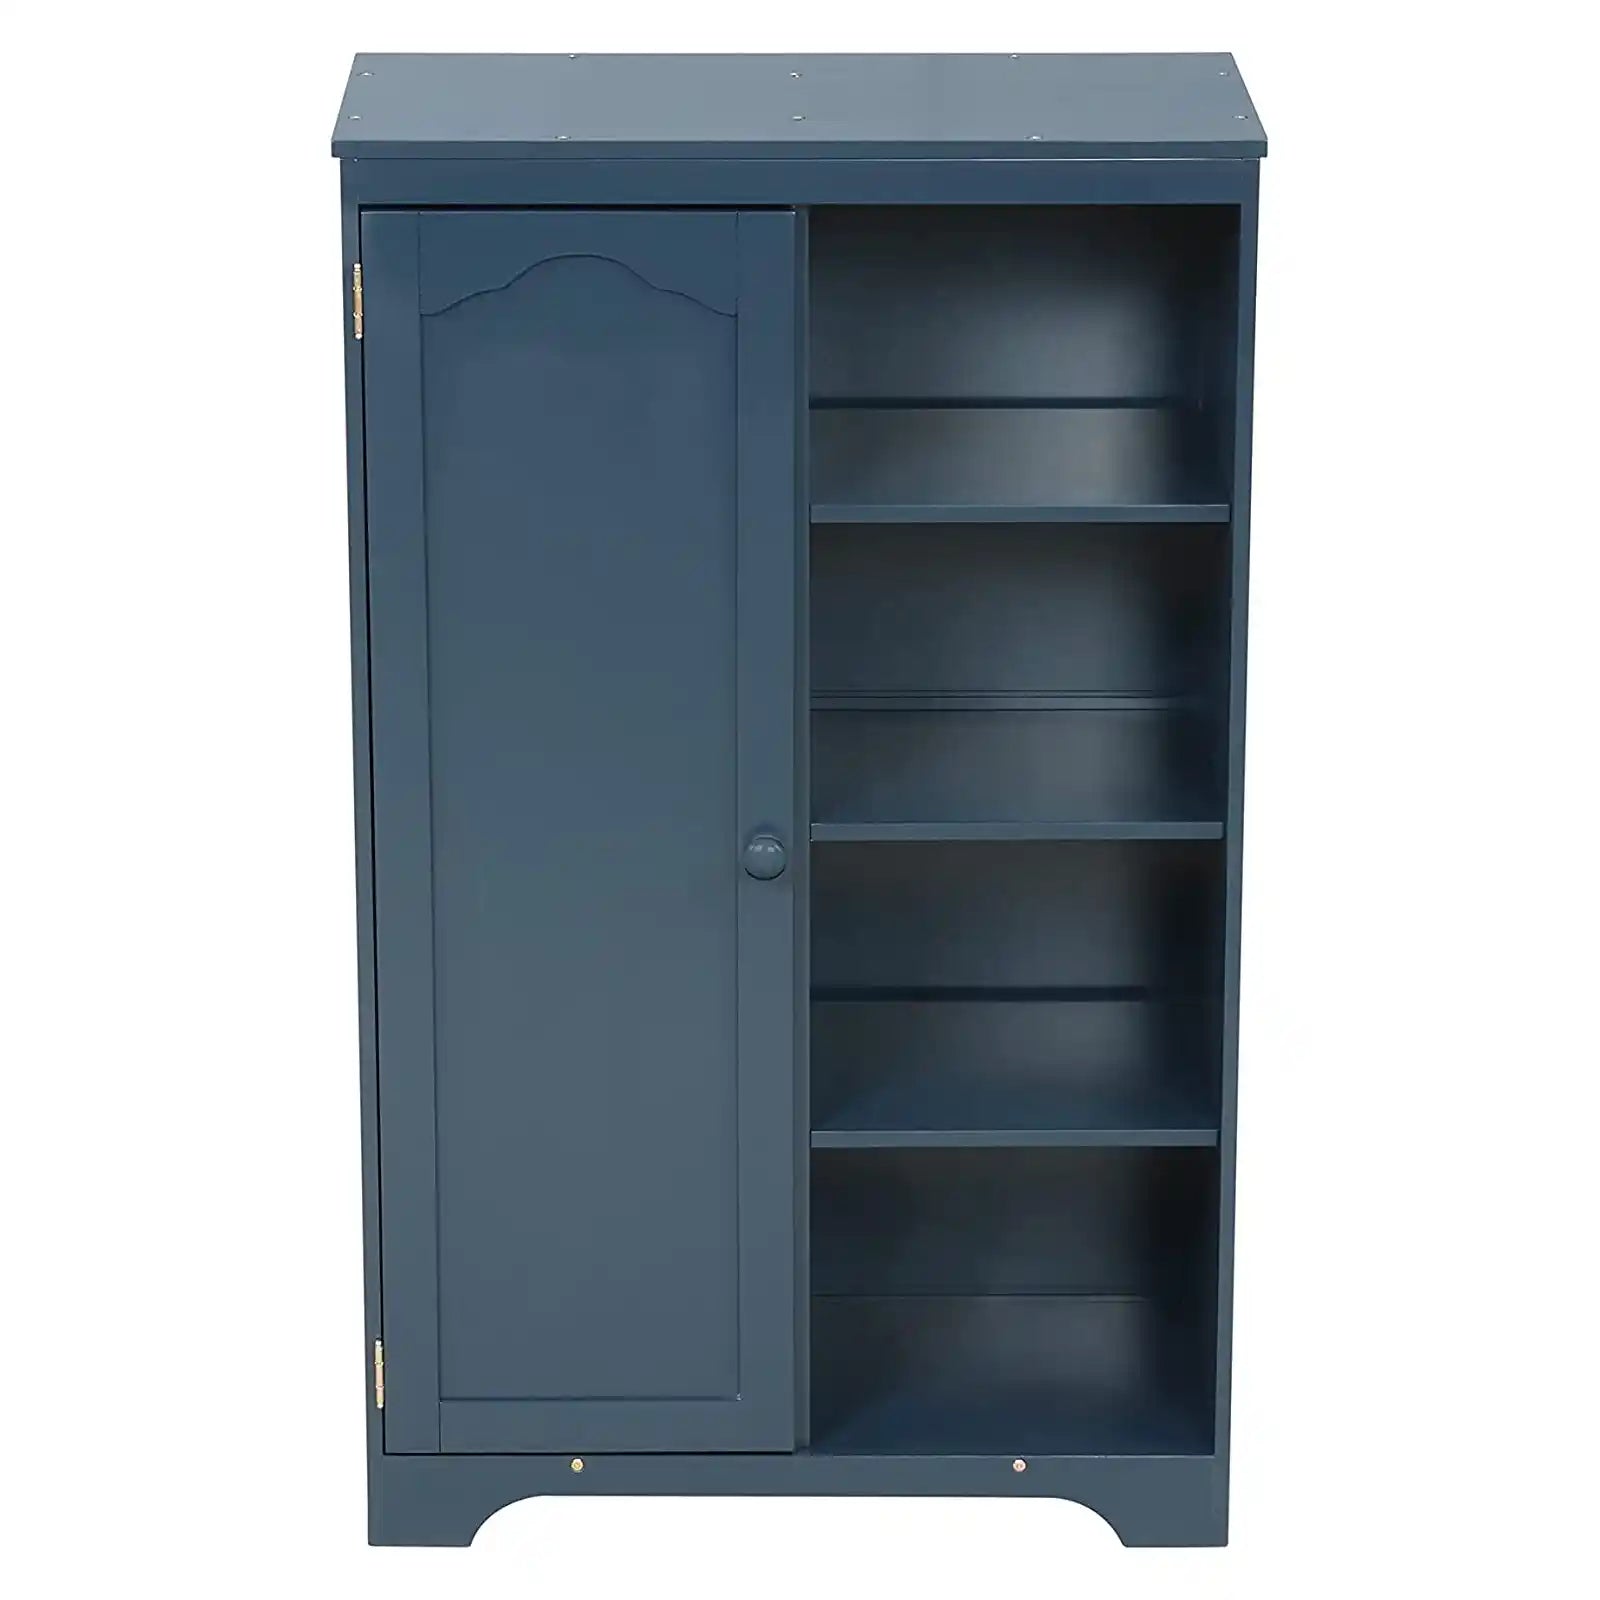 Wooden Armoire Dresser with Door Closet and 4 Tier Shelves , Bedroom Storage Cabinet